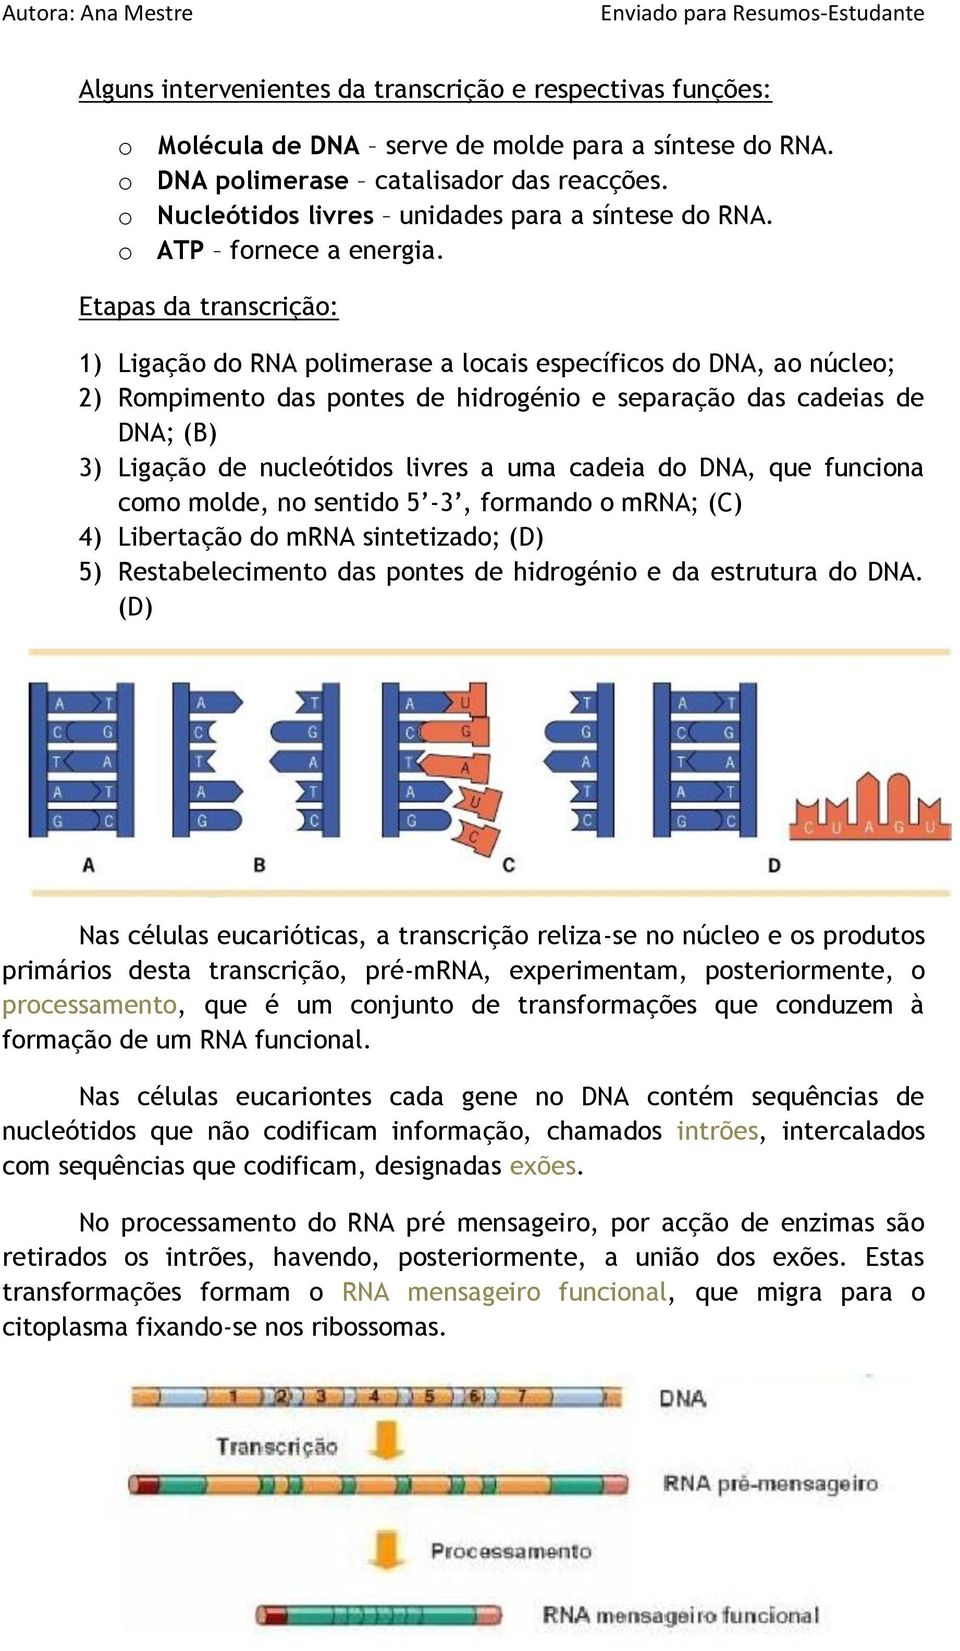 Etapas da transcrição: 1) Ligação do RNA polimerase a locais específicos do DNA, ao núcleo; 2) Rompimento das pontes de hidrogénio e separação das cadeias de DNA; (B) 3) Ligação de nucleótidos livres